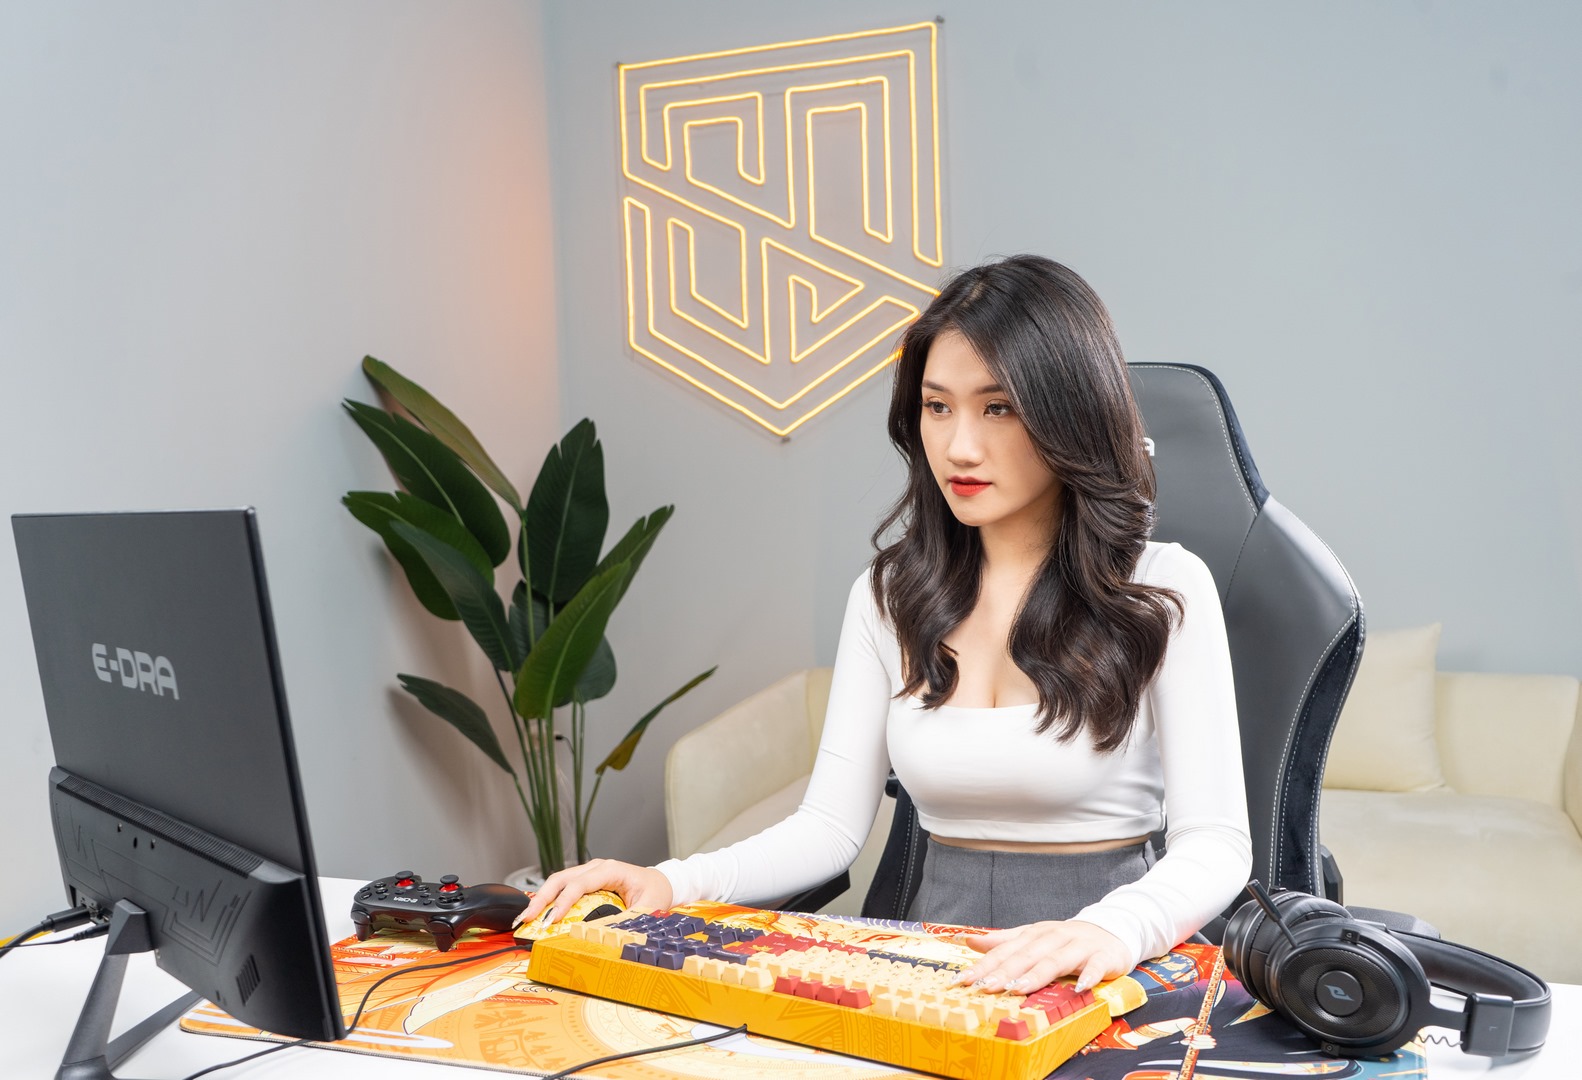 Thương hiệu Gaming Gear - E-Dra bắt tay hợp tác cùng “Mỹ nữ MC Esports” Linh Nắng